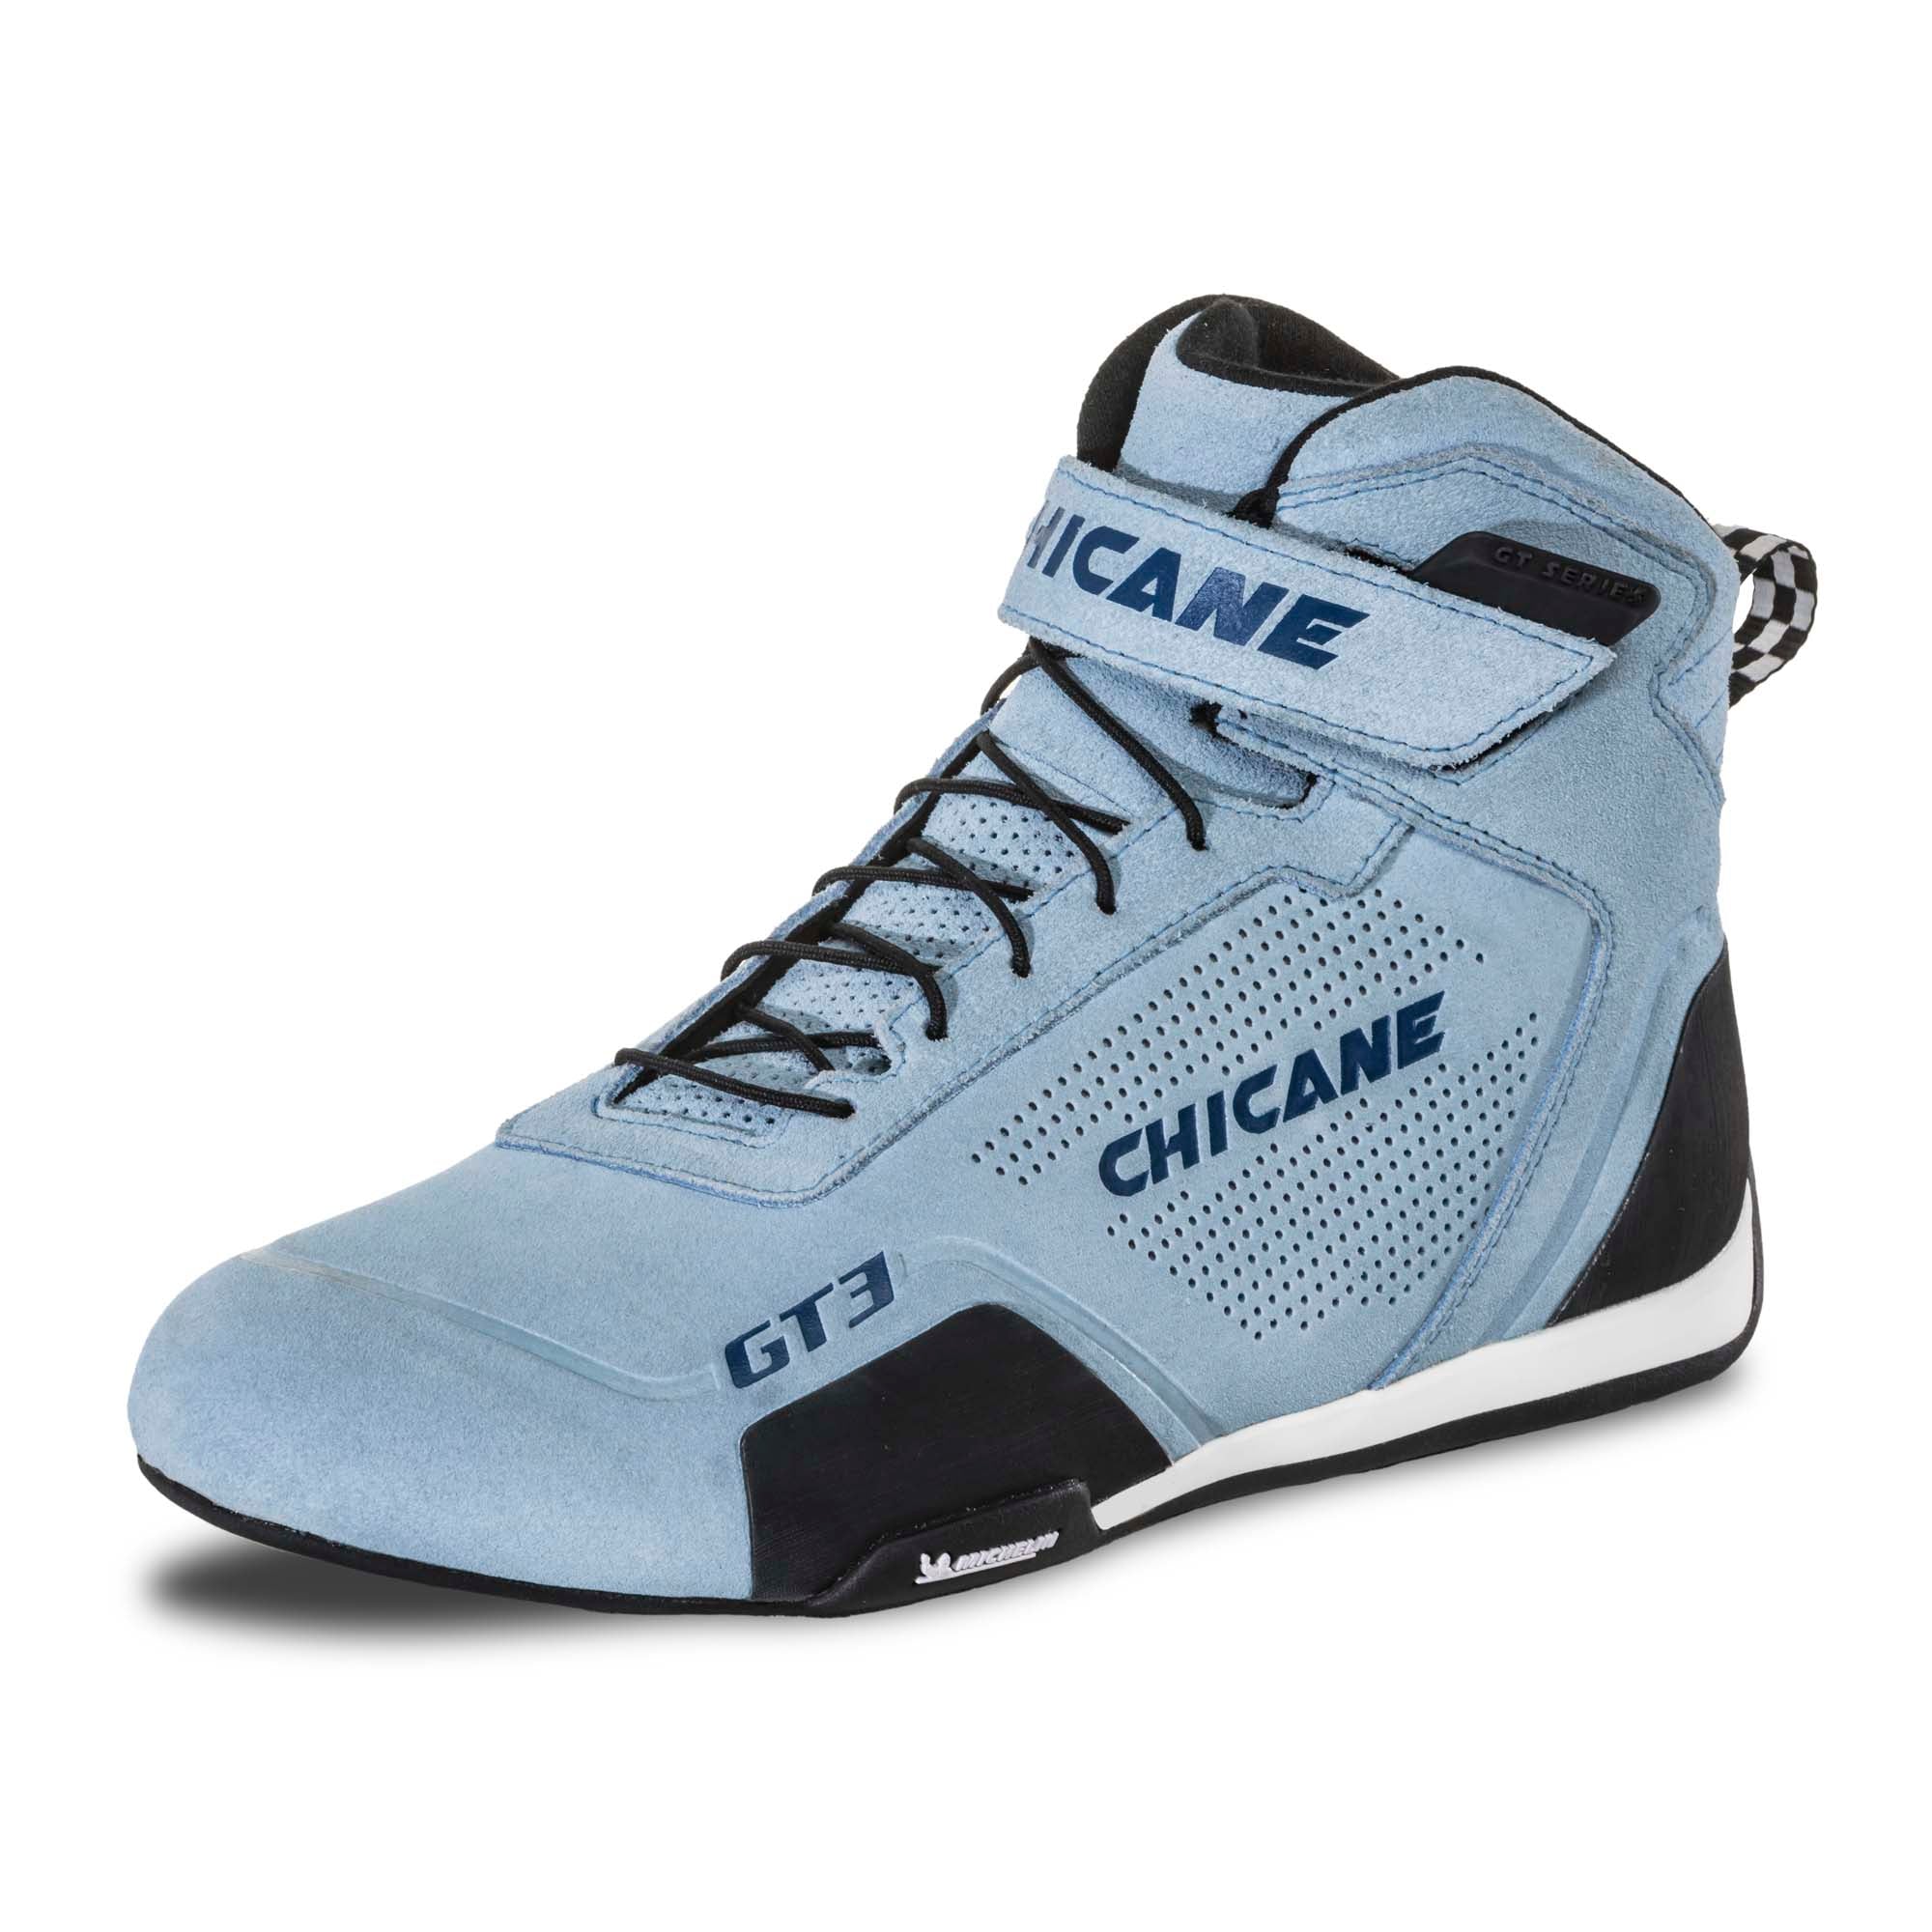 Chicane GT3 Women's Racing Shoes